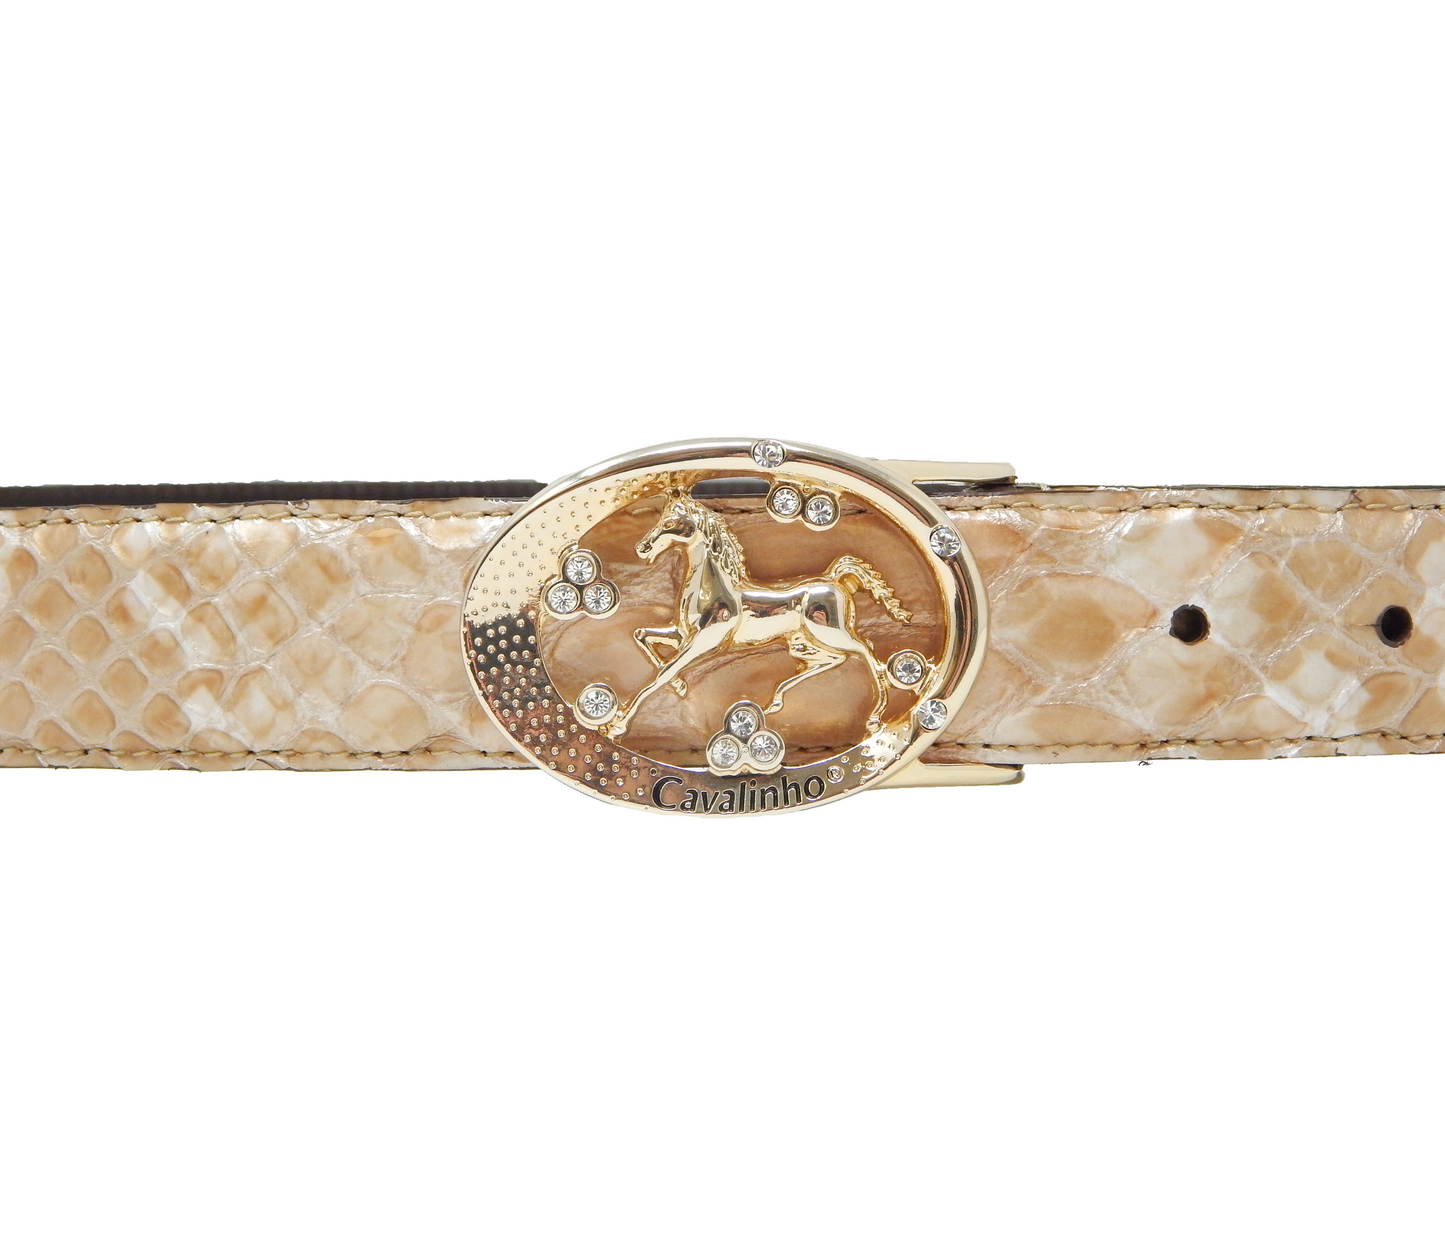 #color_ Beige Gold | Cavalinho Oval Horse Leather Belt - Beige Gold - 58010817.05_3